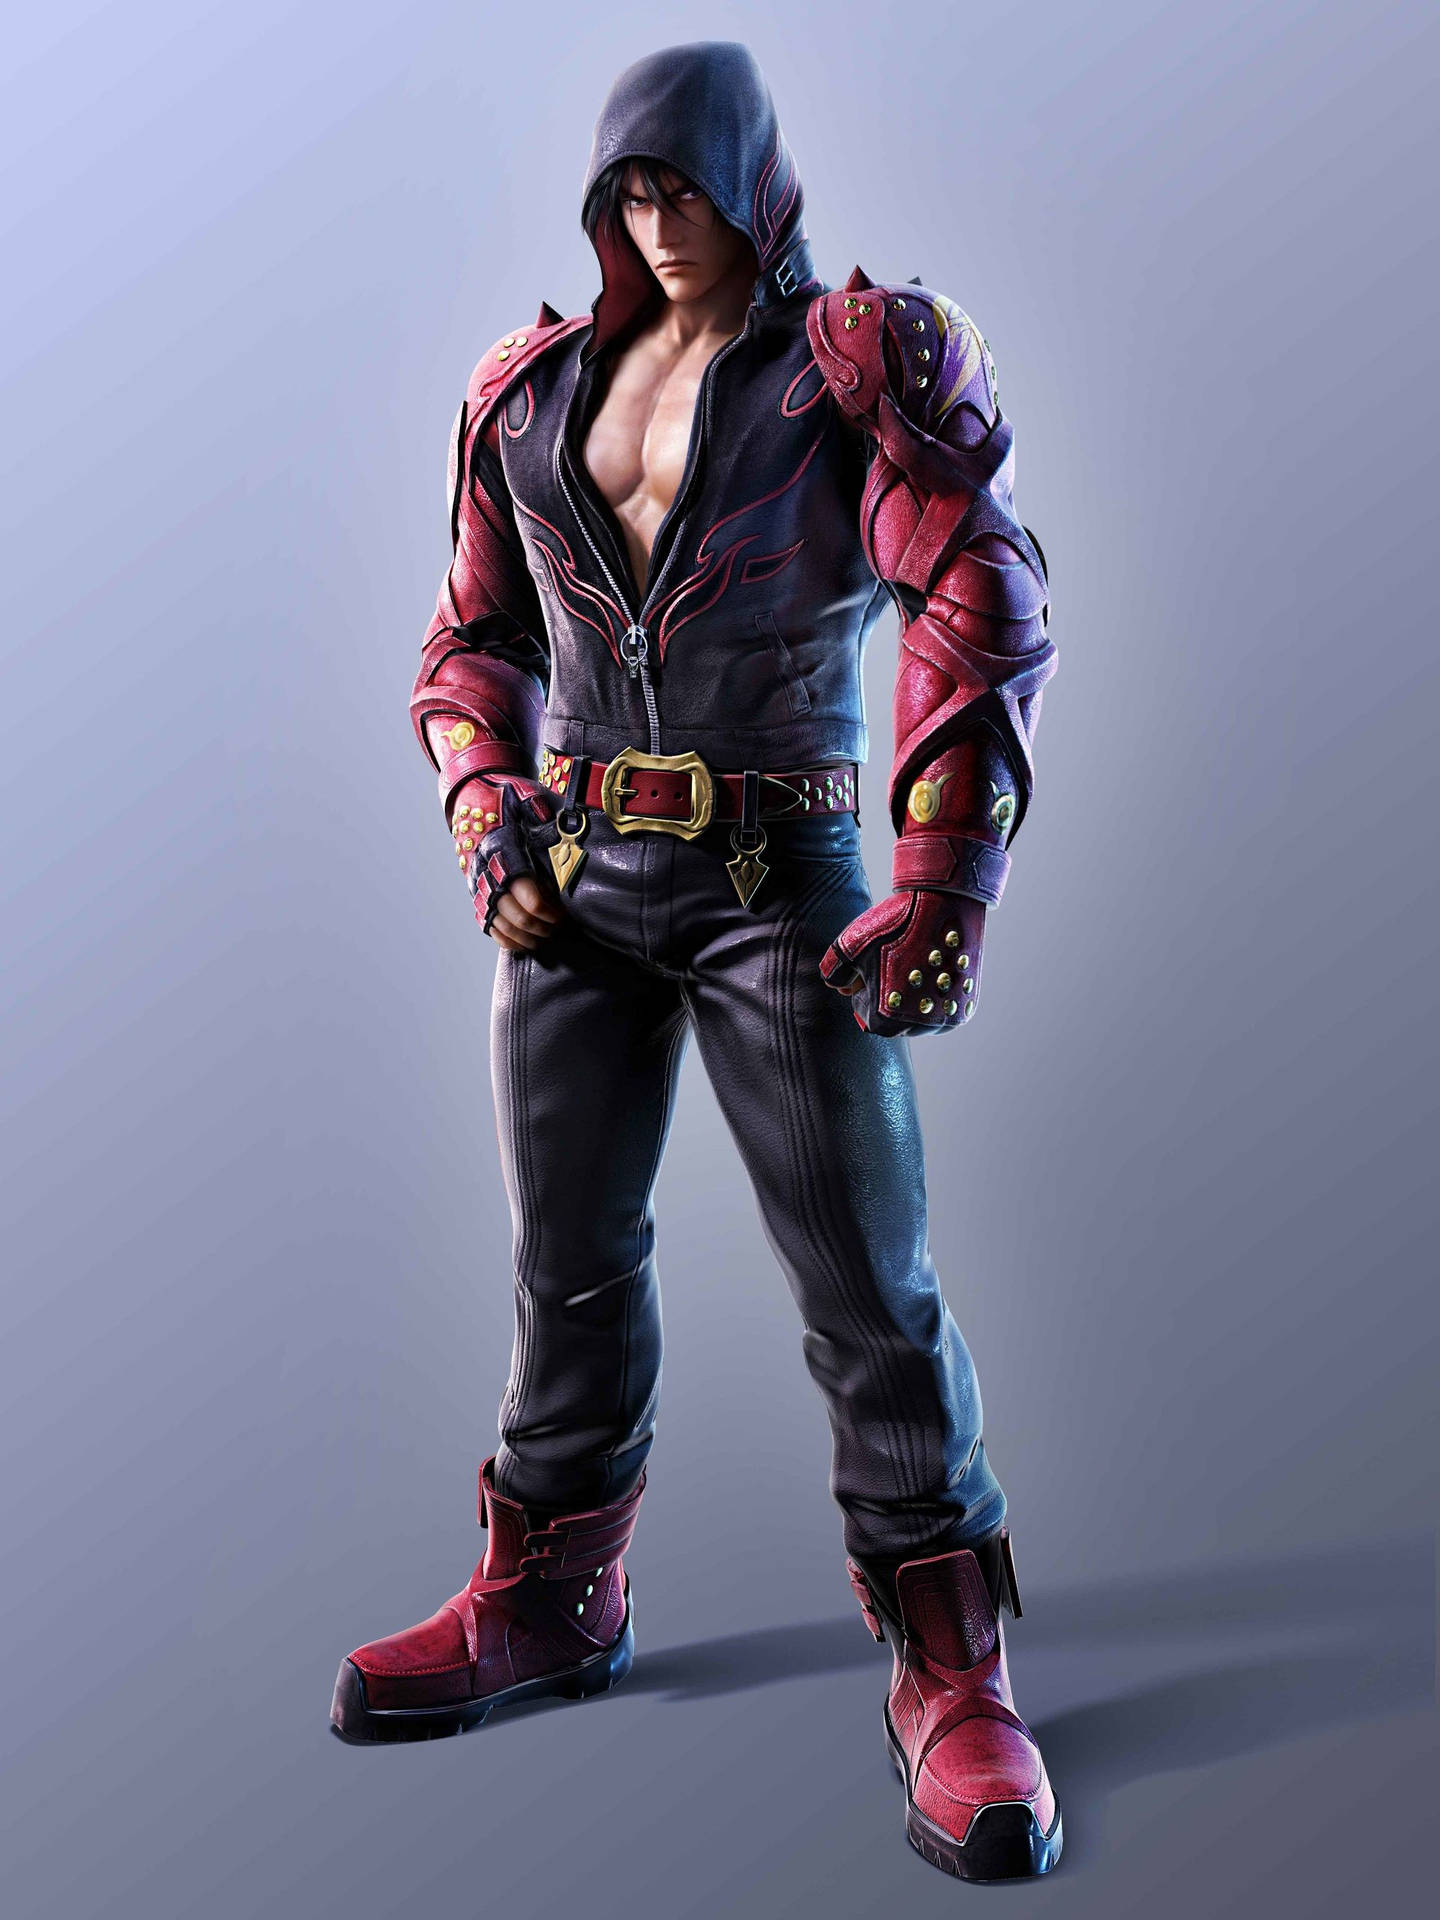 Jin Kazama Tekken Game Background